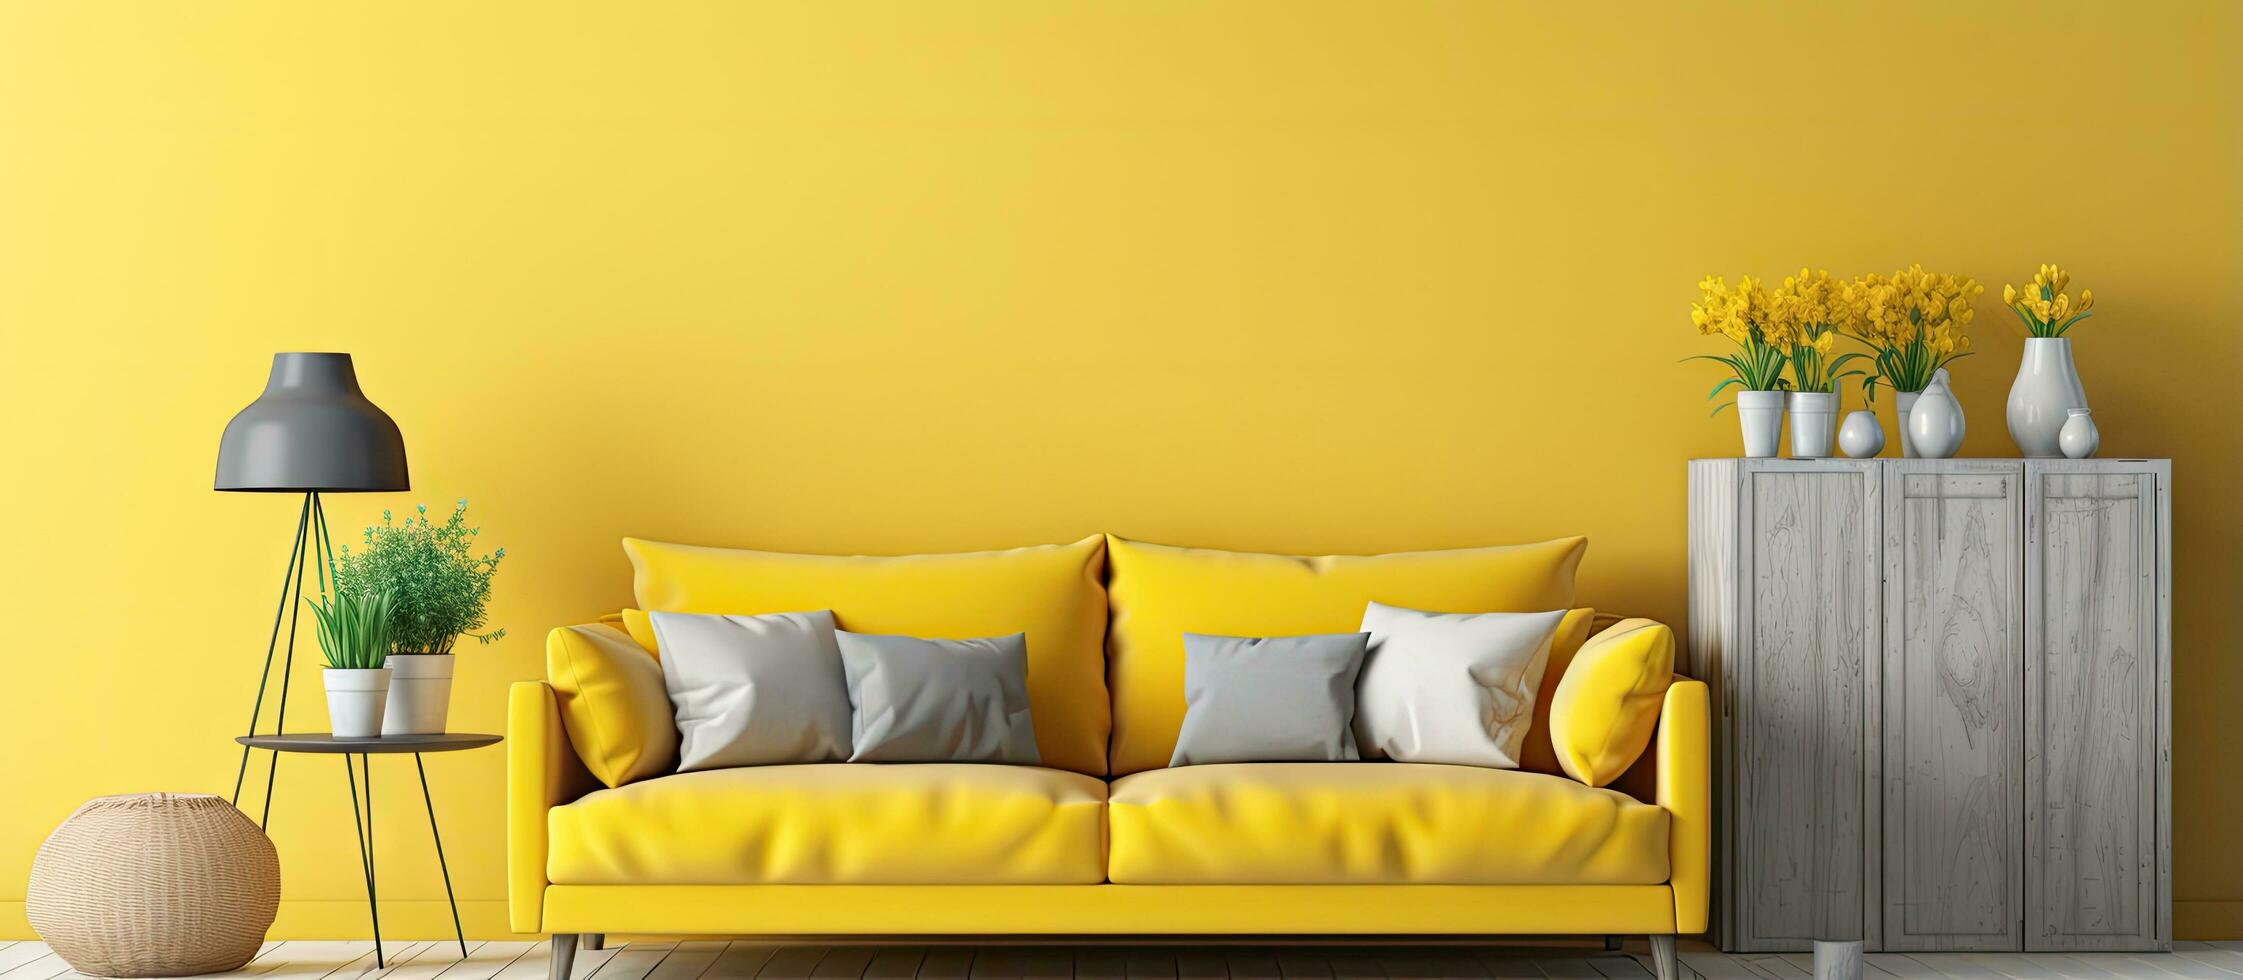 Leben Zimmer mit Ostern thematisch Dekorationen und Gelb Möbel foto